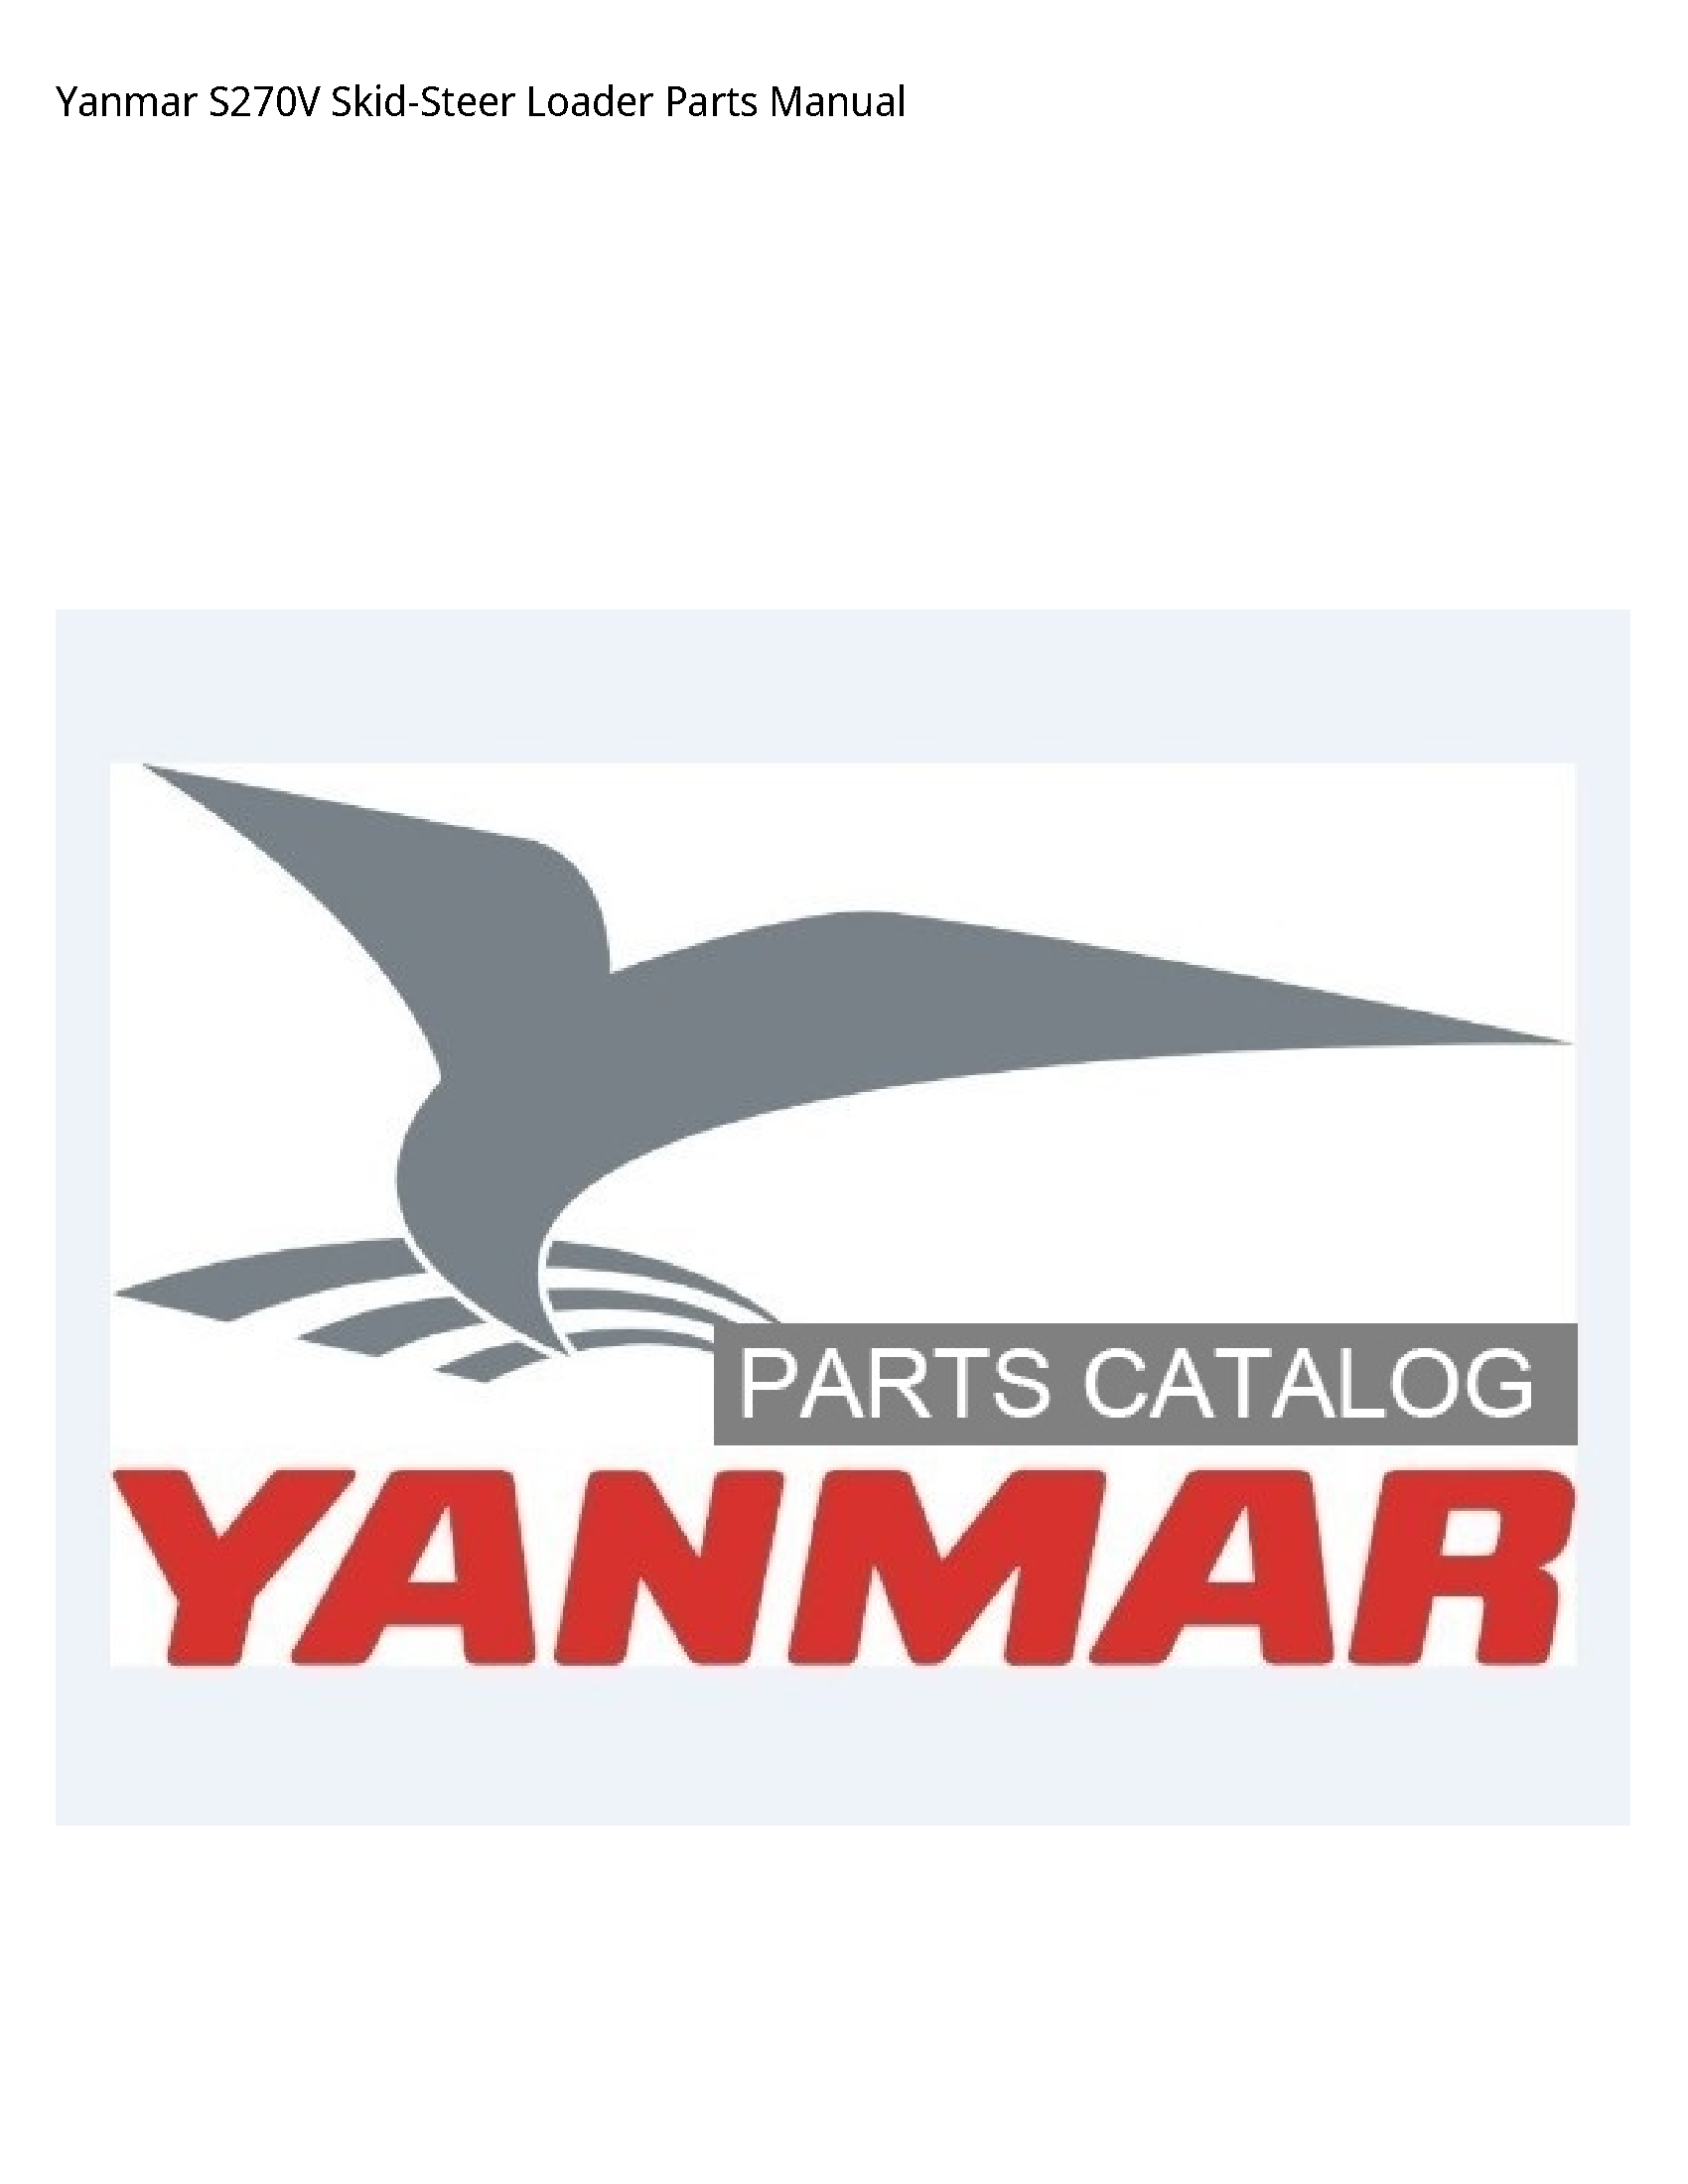 Yanmar S270V Skid-Steer Loader Parts manual